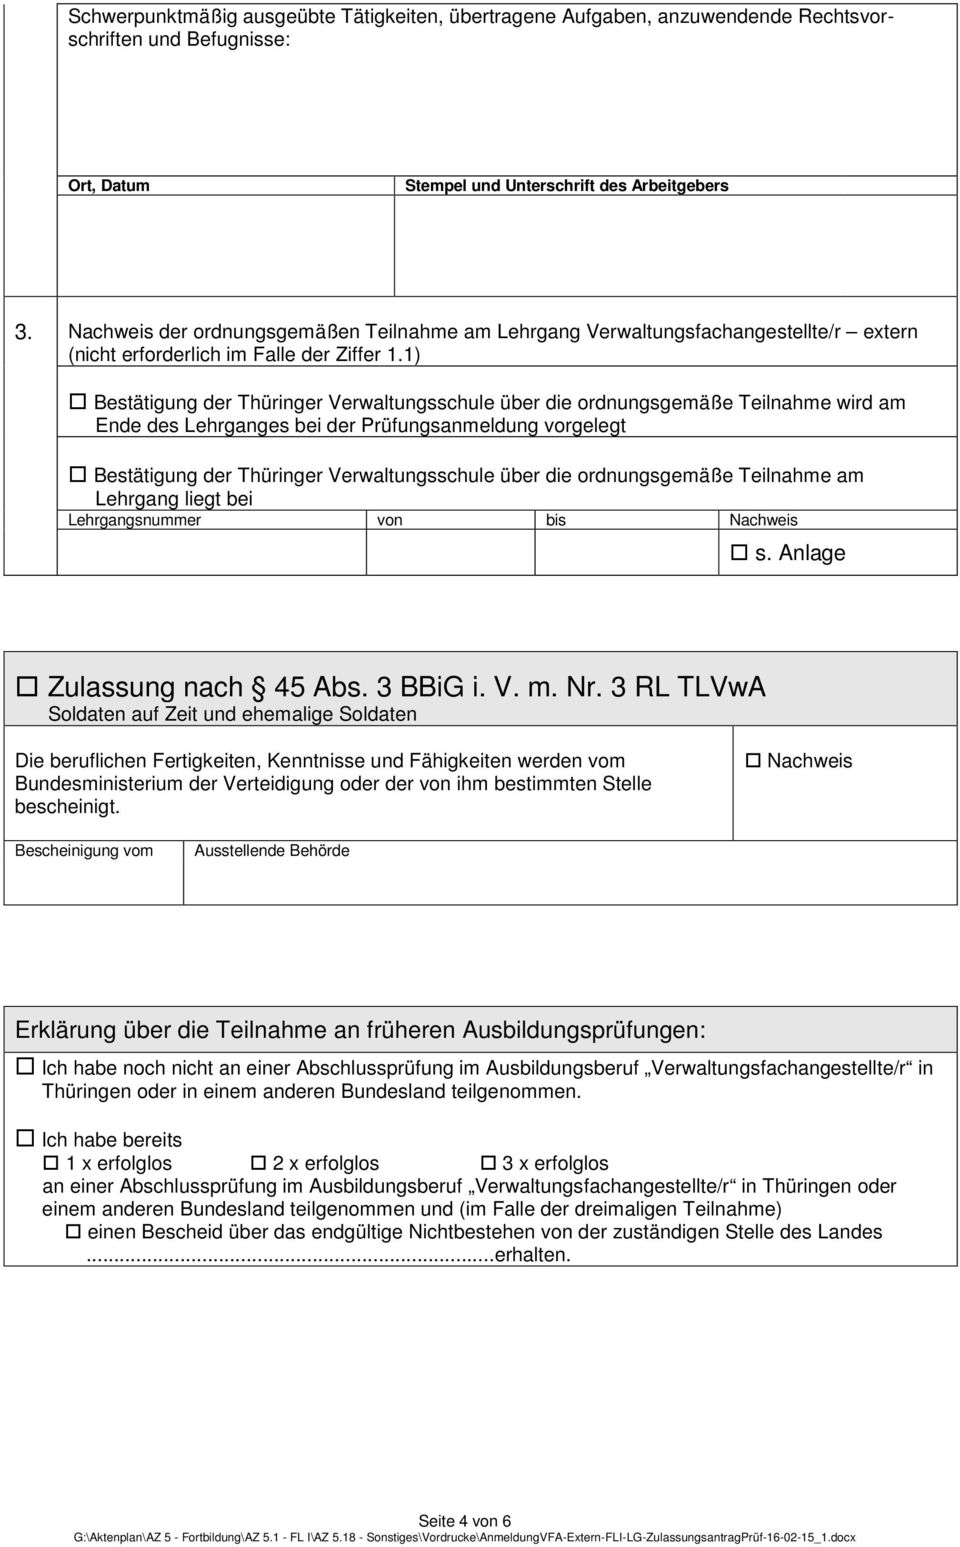 1) Bestätigung der Thüringer Verwaltungsschule über die ordnungsgemäße Teilnahme wird am Ende des Lehrganges bei der Prüfungsanmeldung vorgelegt Bestätigung der Thüringer Verwaltungsschule über die